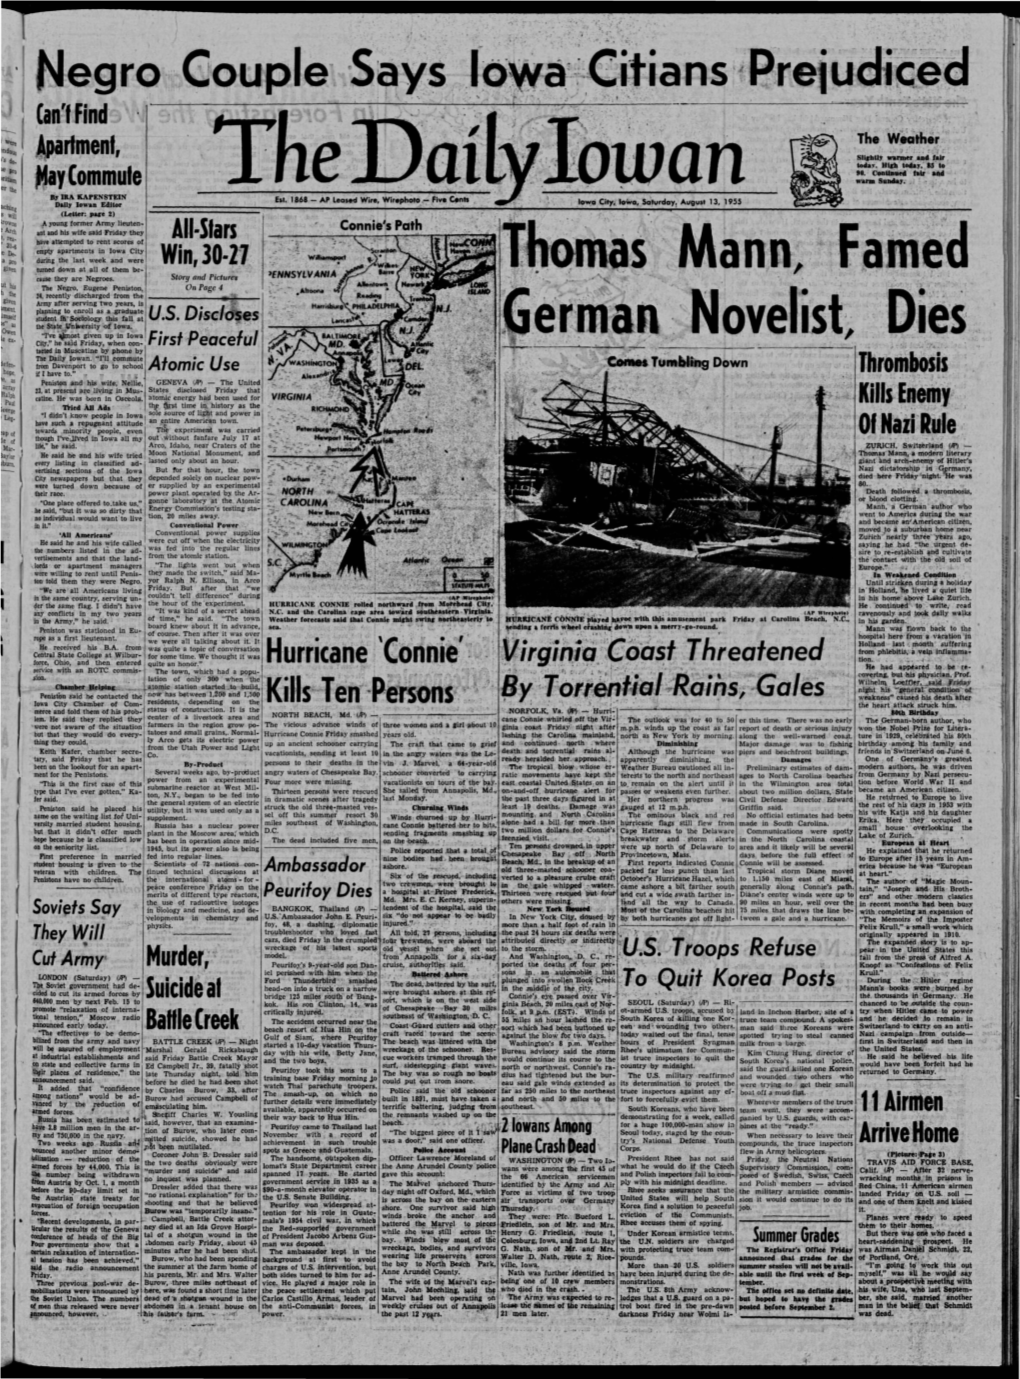 Daily Iowan (Iowa City, Iowa), 1955-08-13